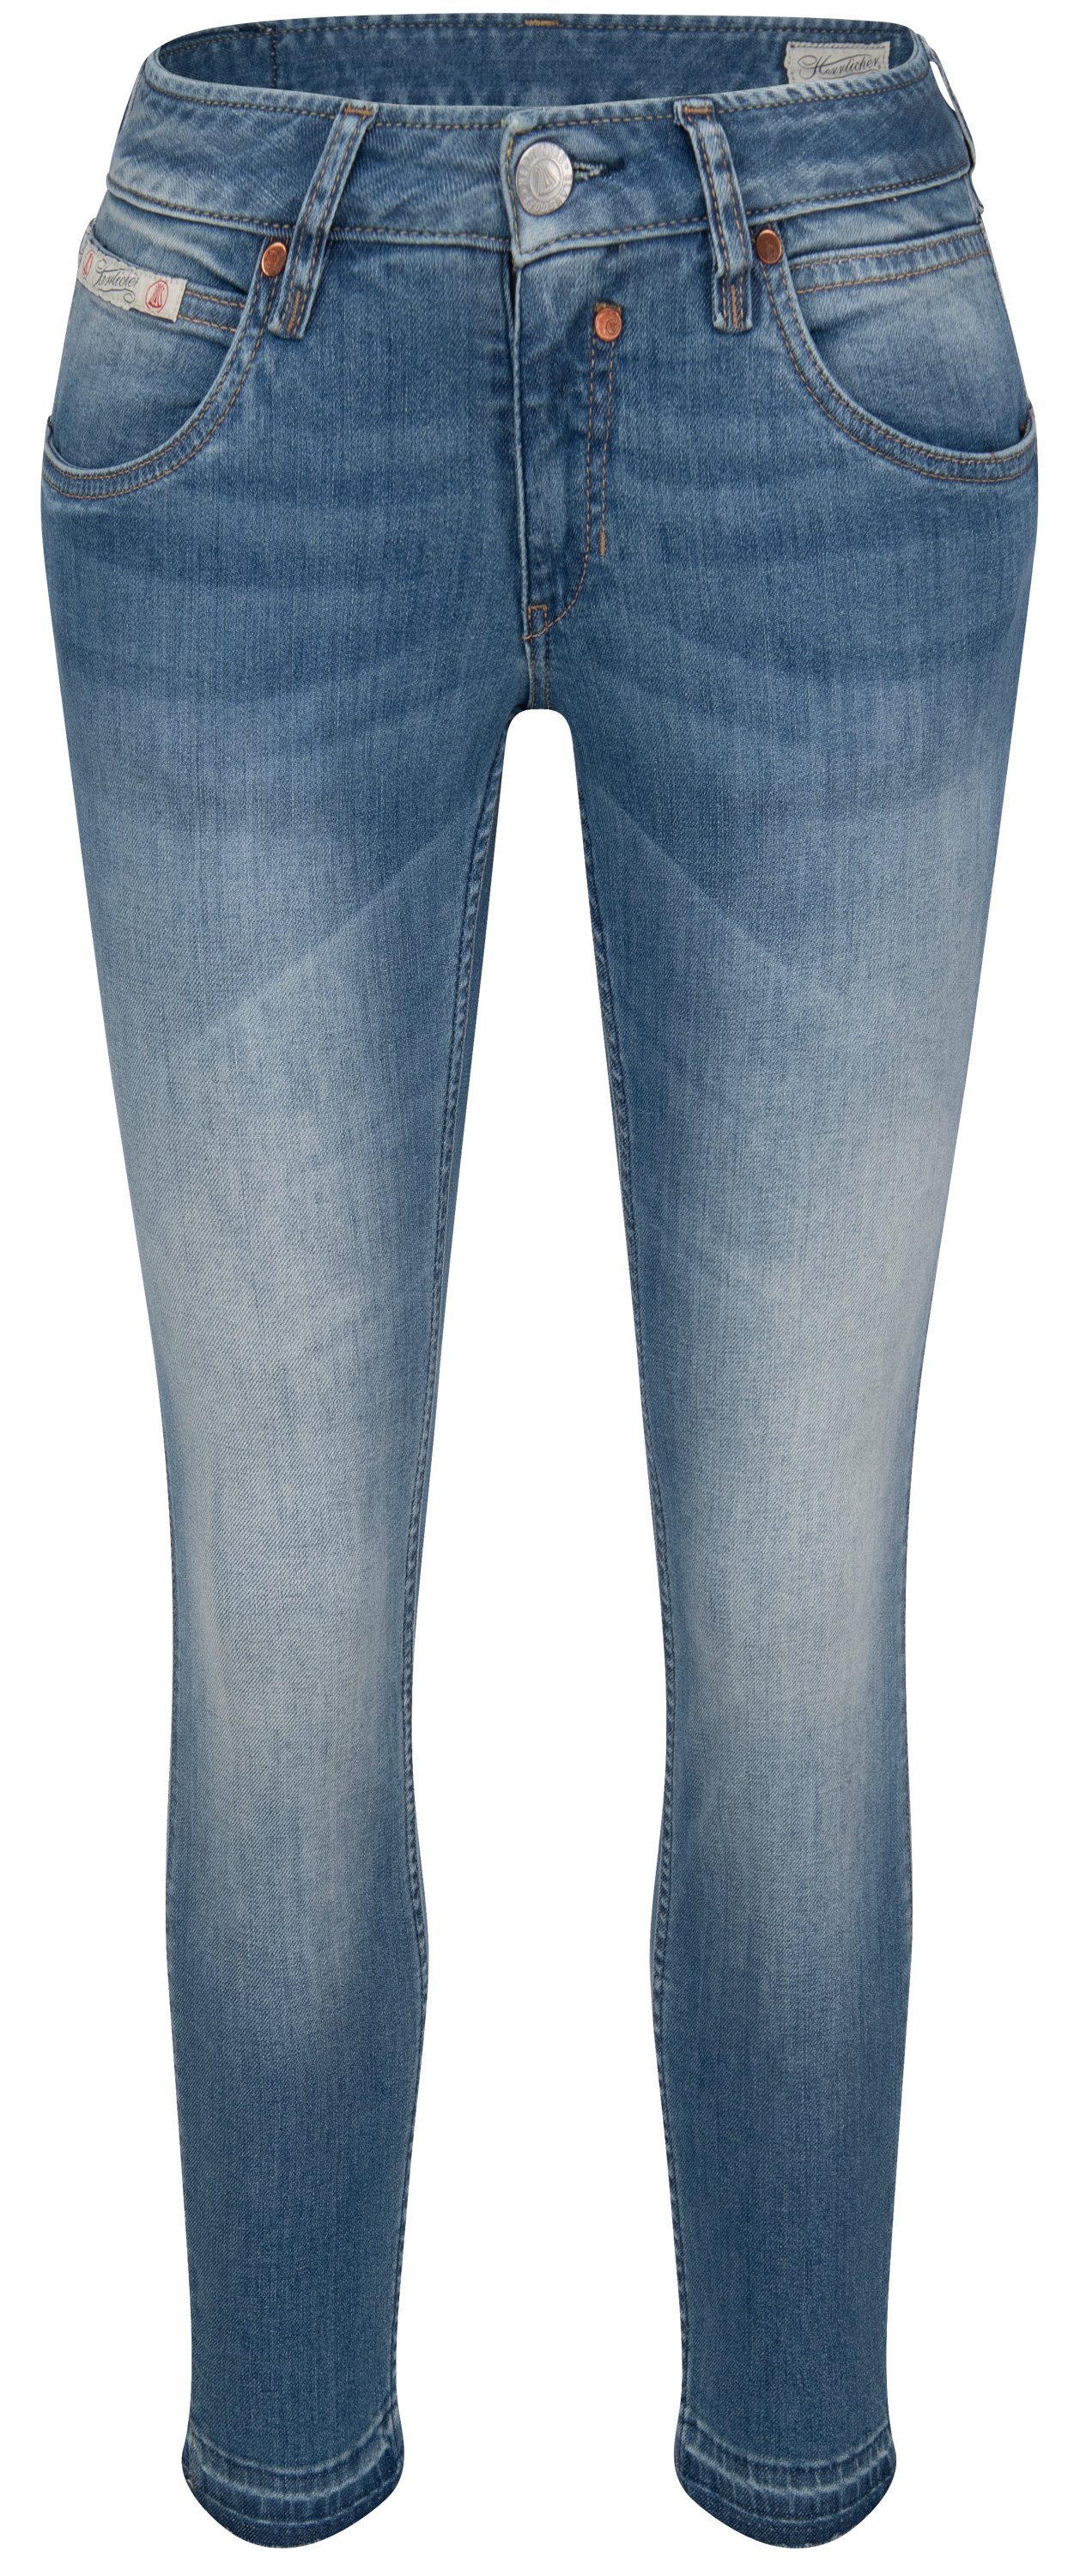 Herrlicher Stretch-Jeans HERRLICHER TOUCH Cropped Organic Denim blue sea 5320-OD100-879